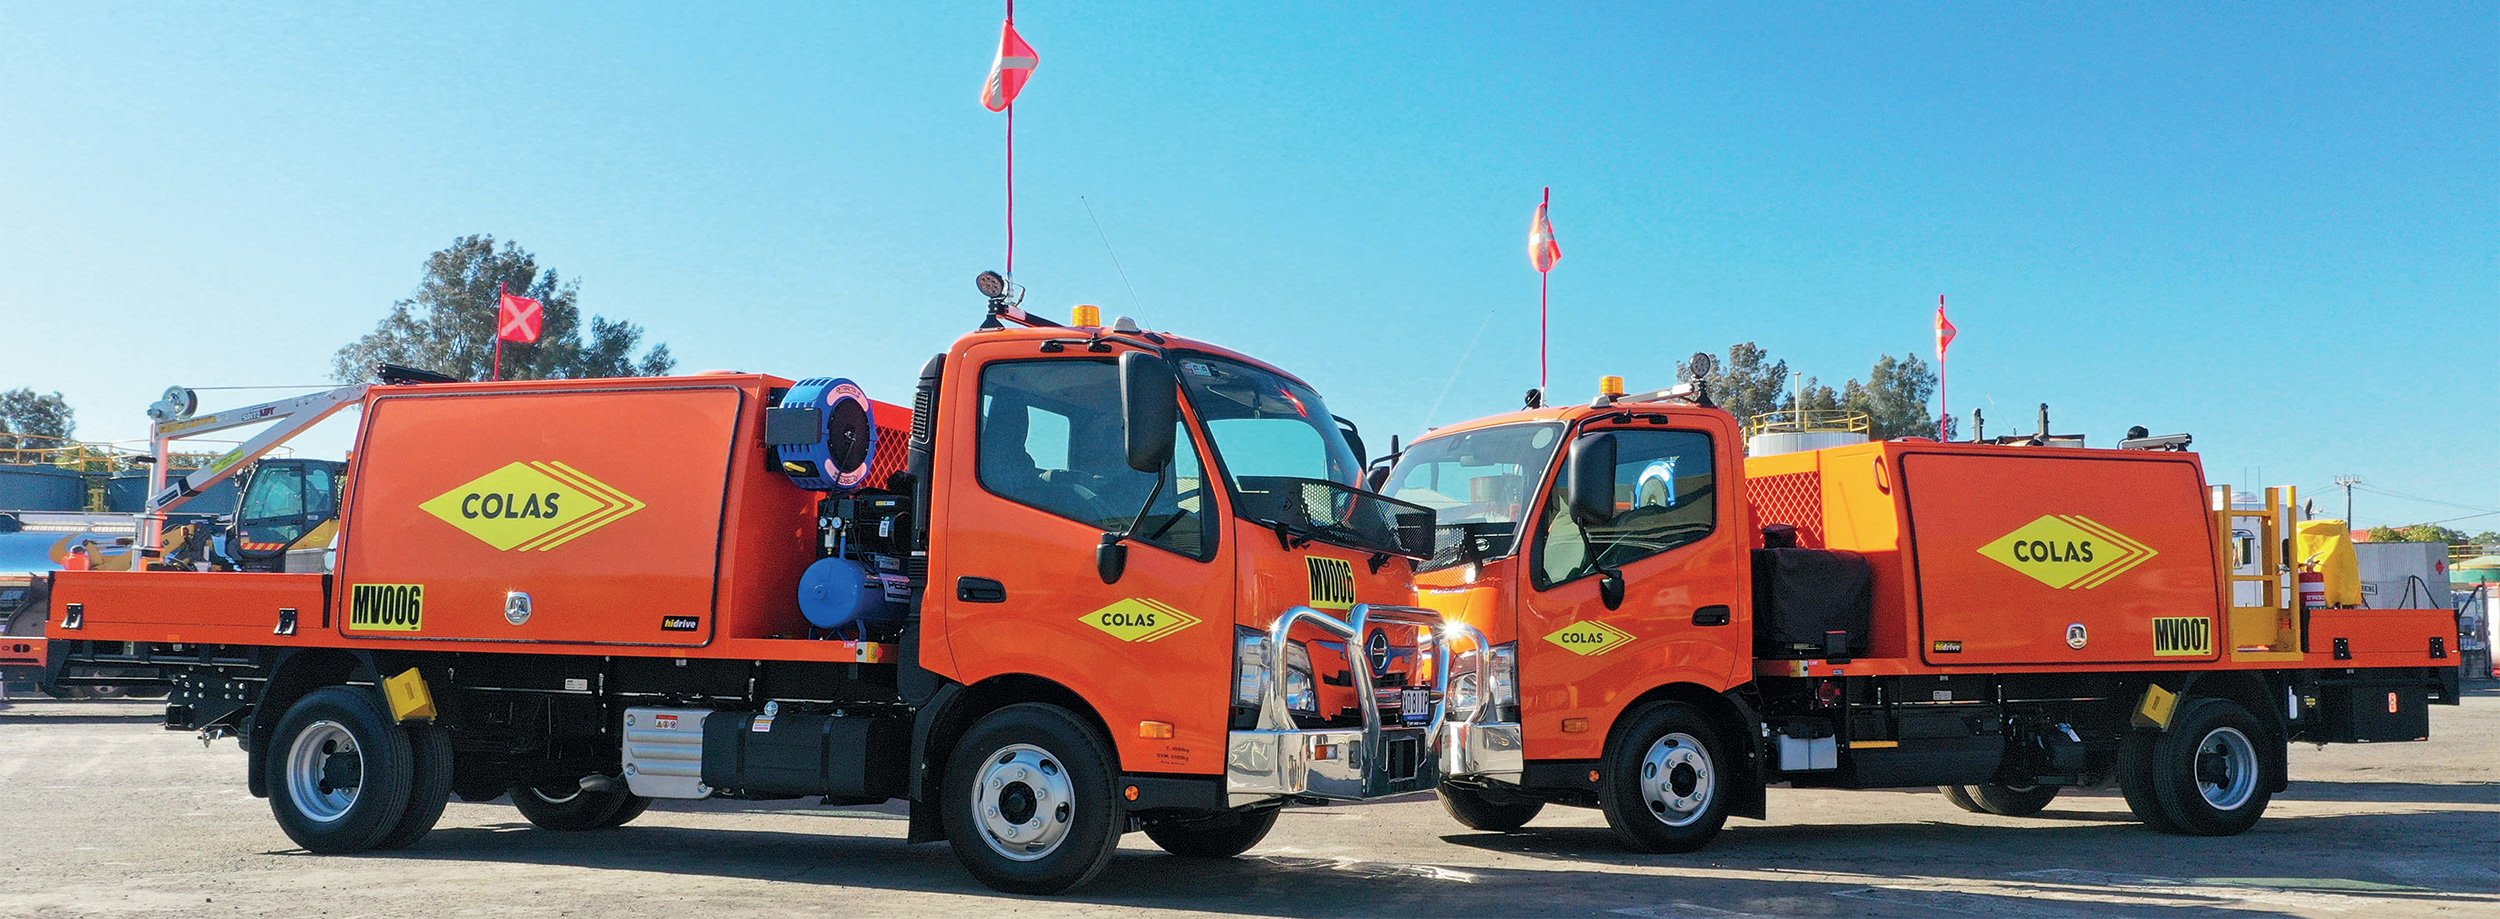 Truck Service Body - Hino Service Truck